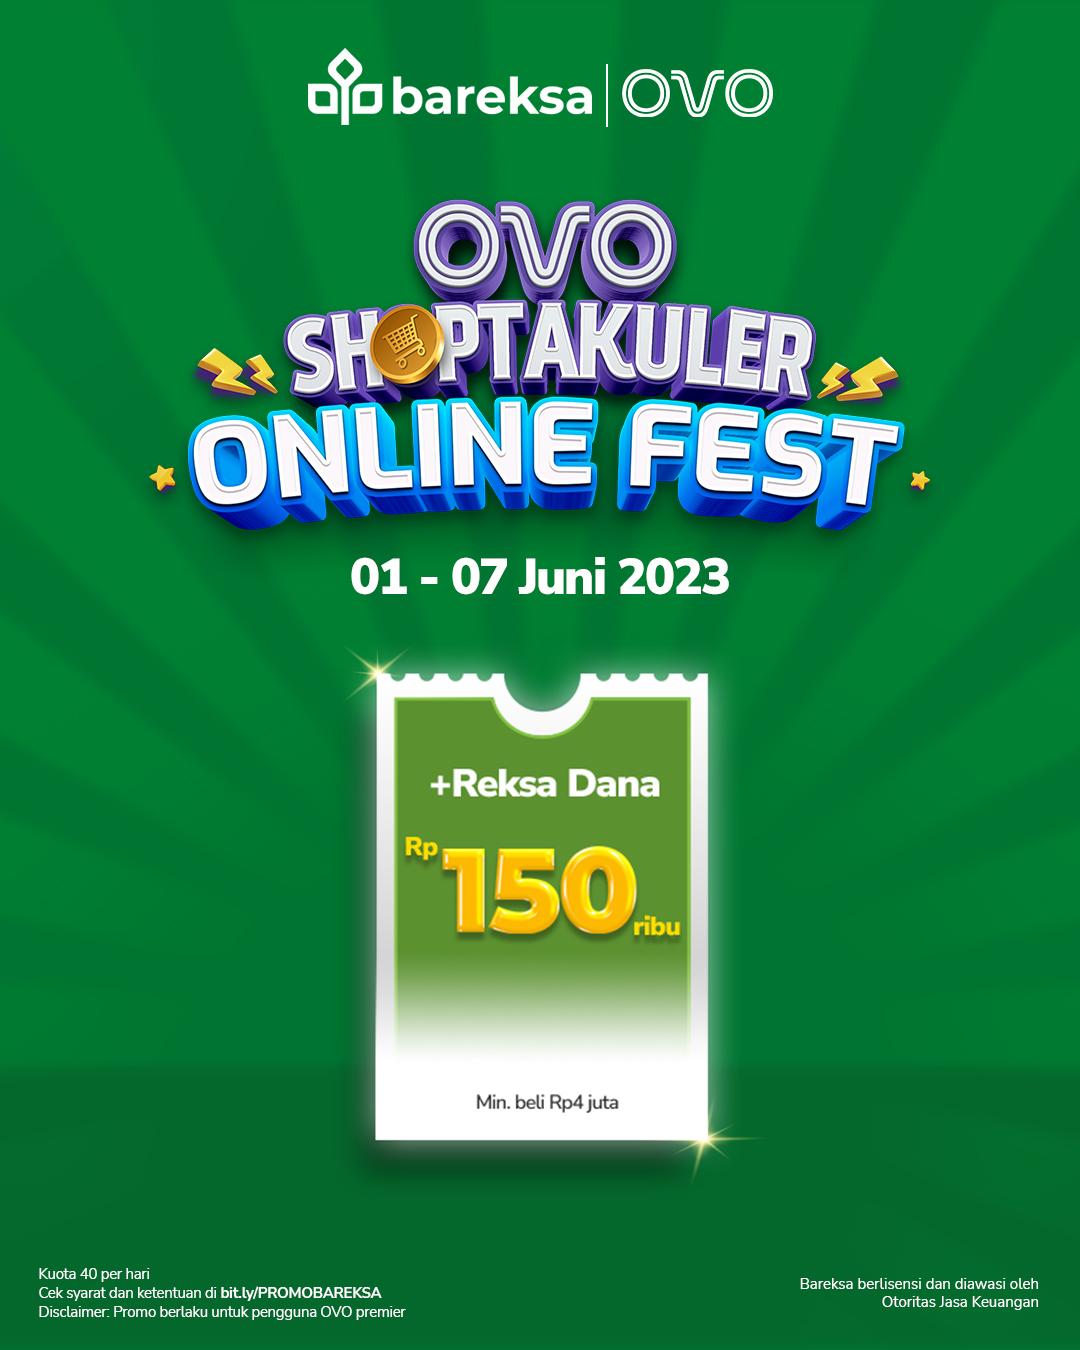 Promo OVO Shoptakuler: Investasi di Bareksa Berhadiah Reksadana Rp150 Ribu